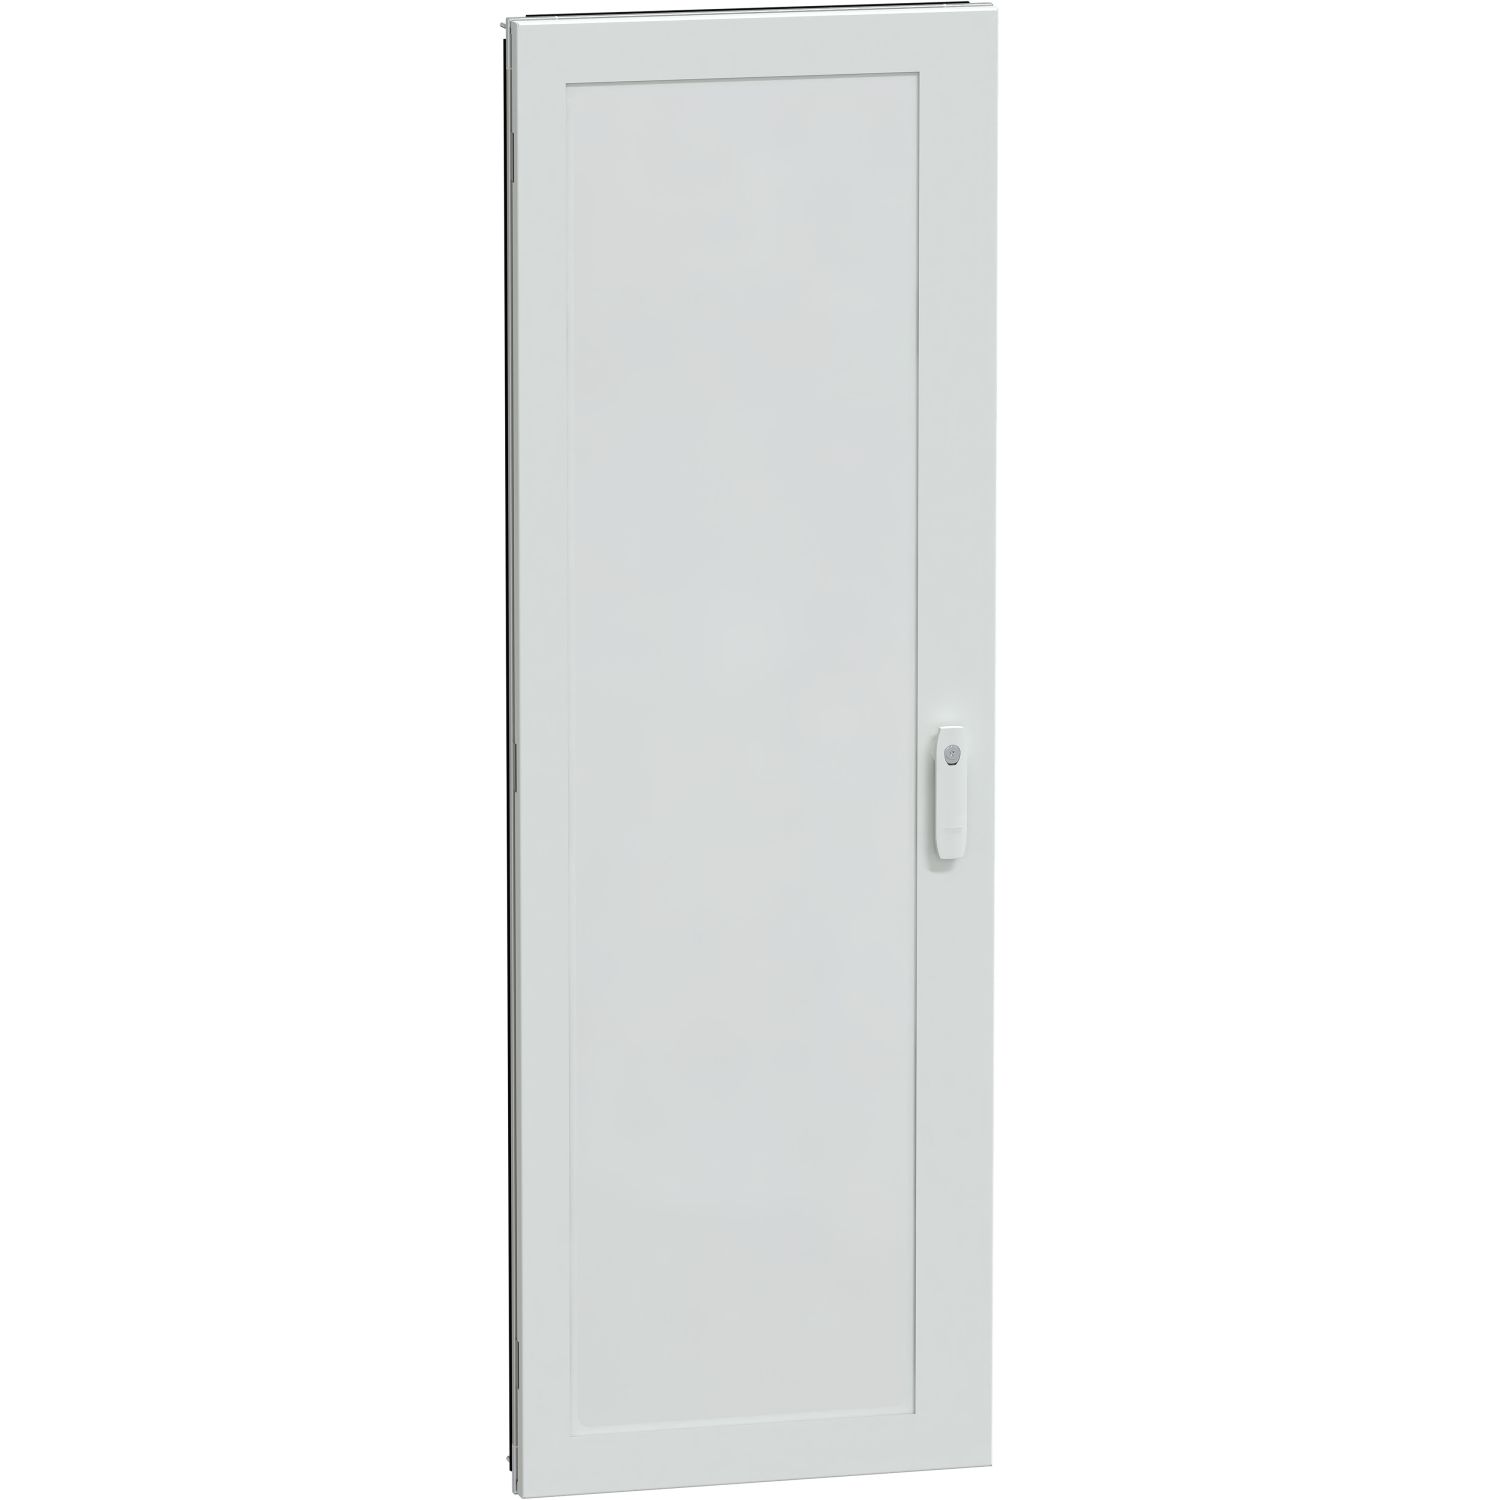 Átlátszó ajtó g szekrény IP55 33m